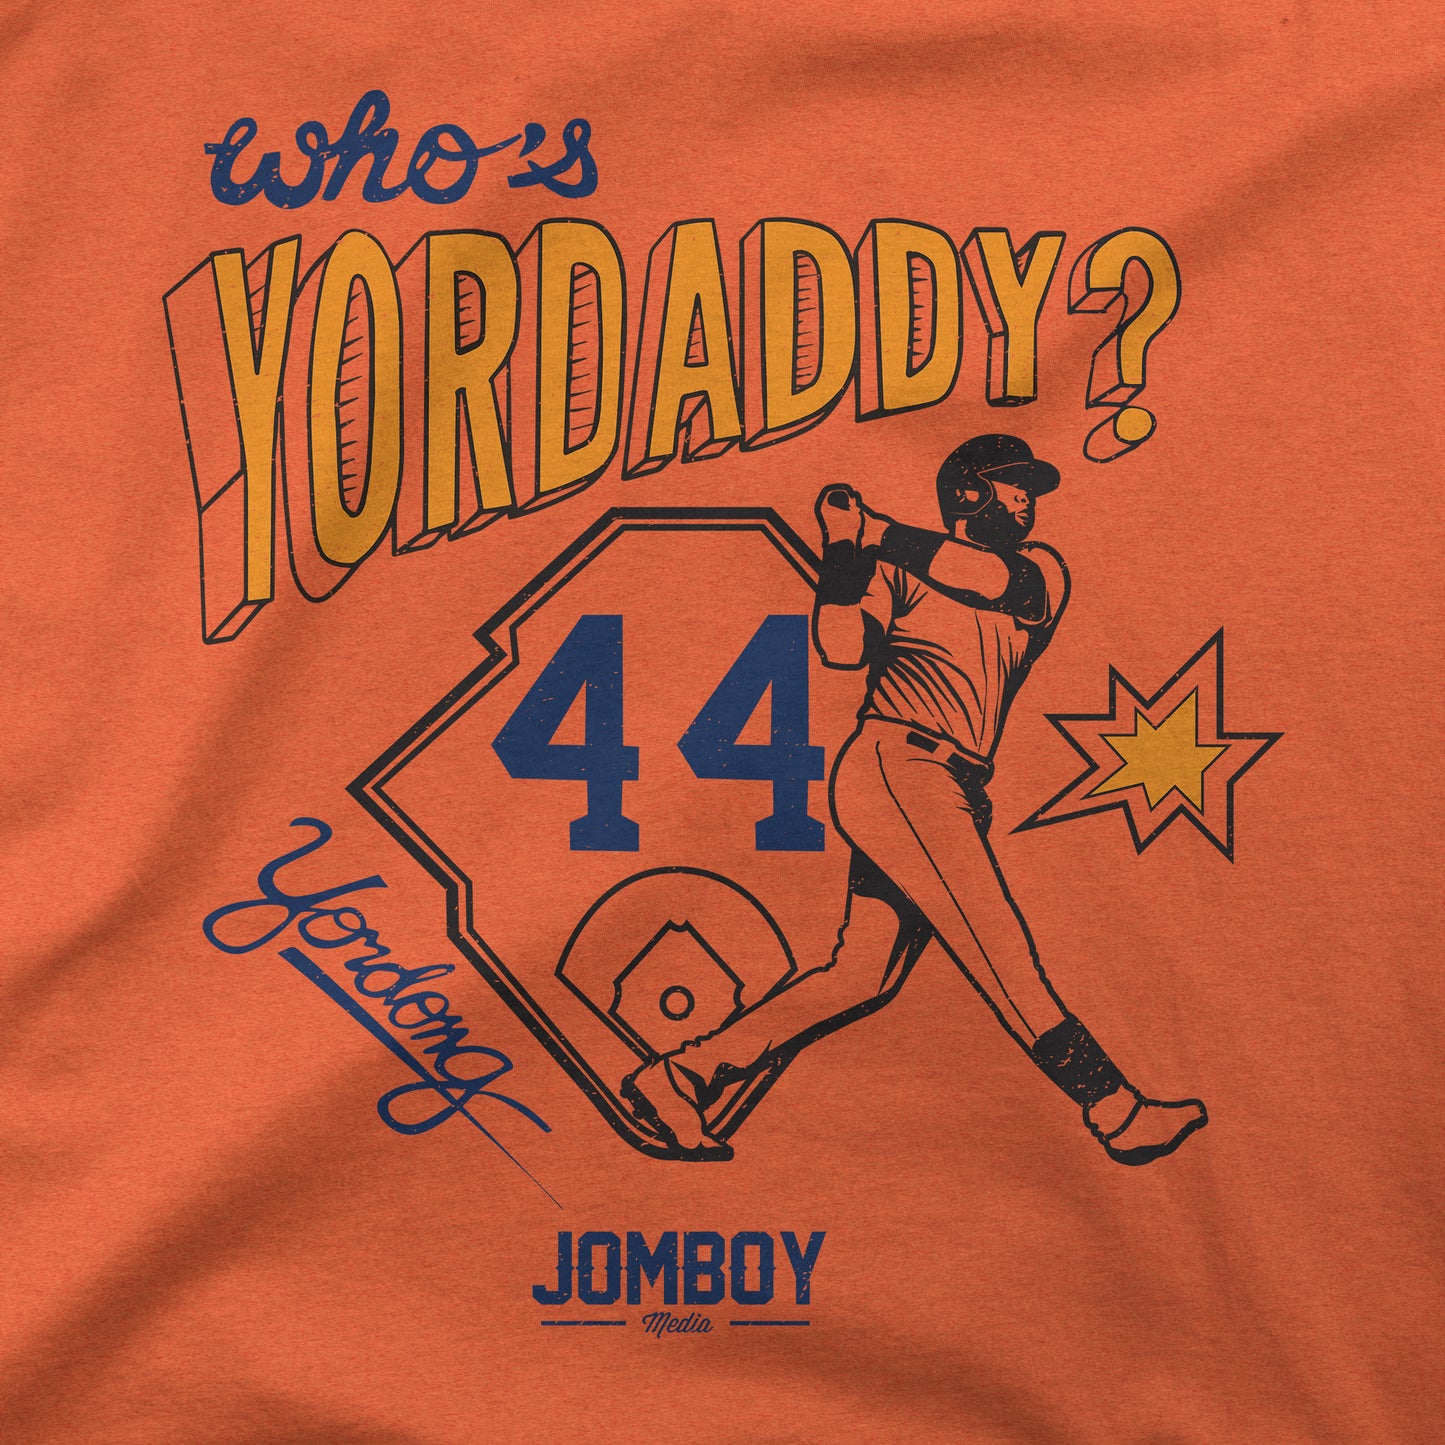 Who's Yordaddy Yordong 44 Jomboy shirt, hoodie, sweater, long